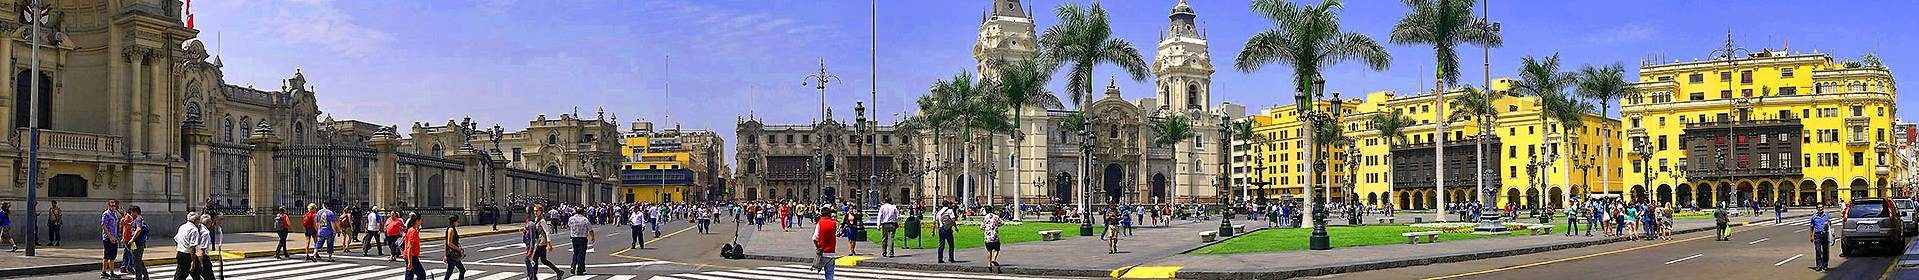 Main square in Lima Peru